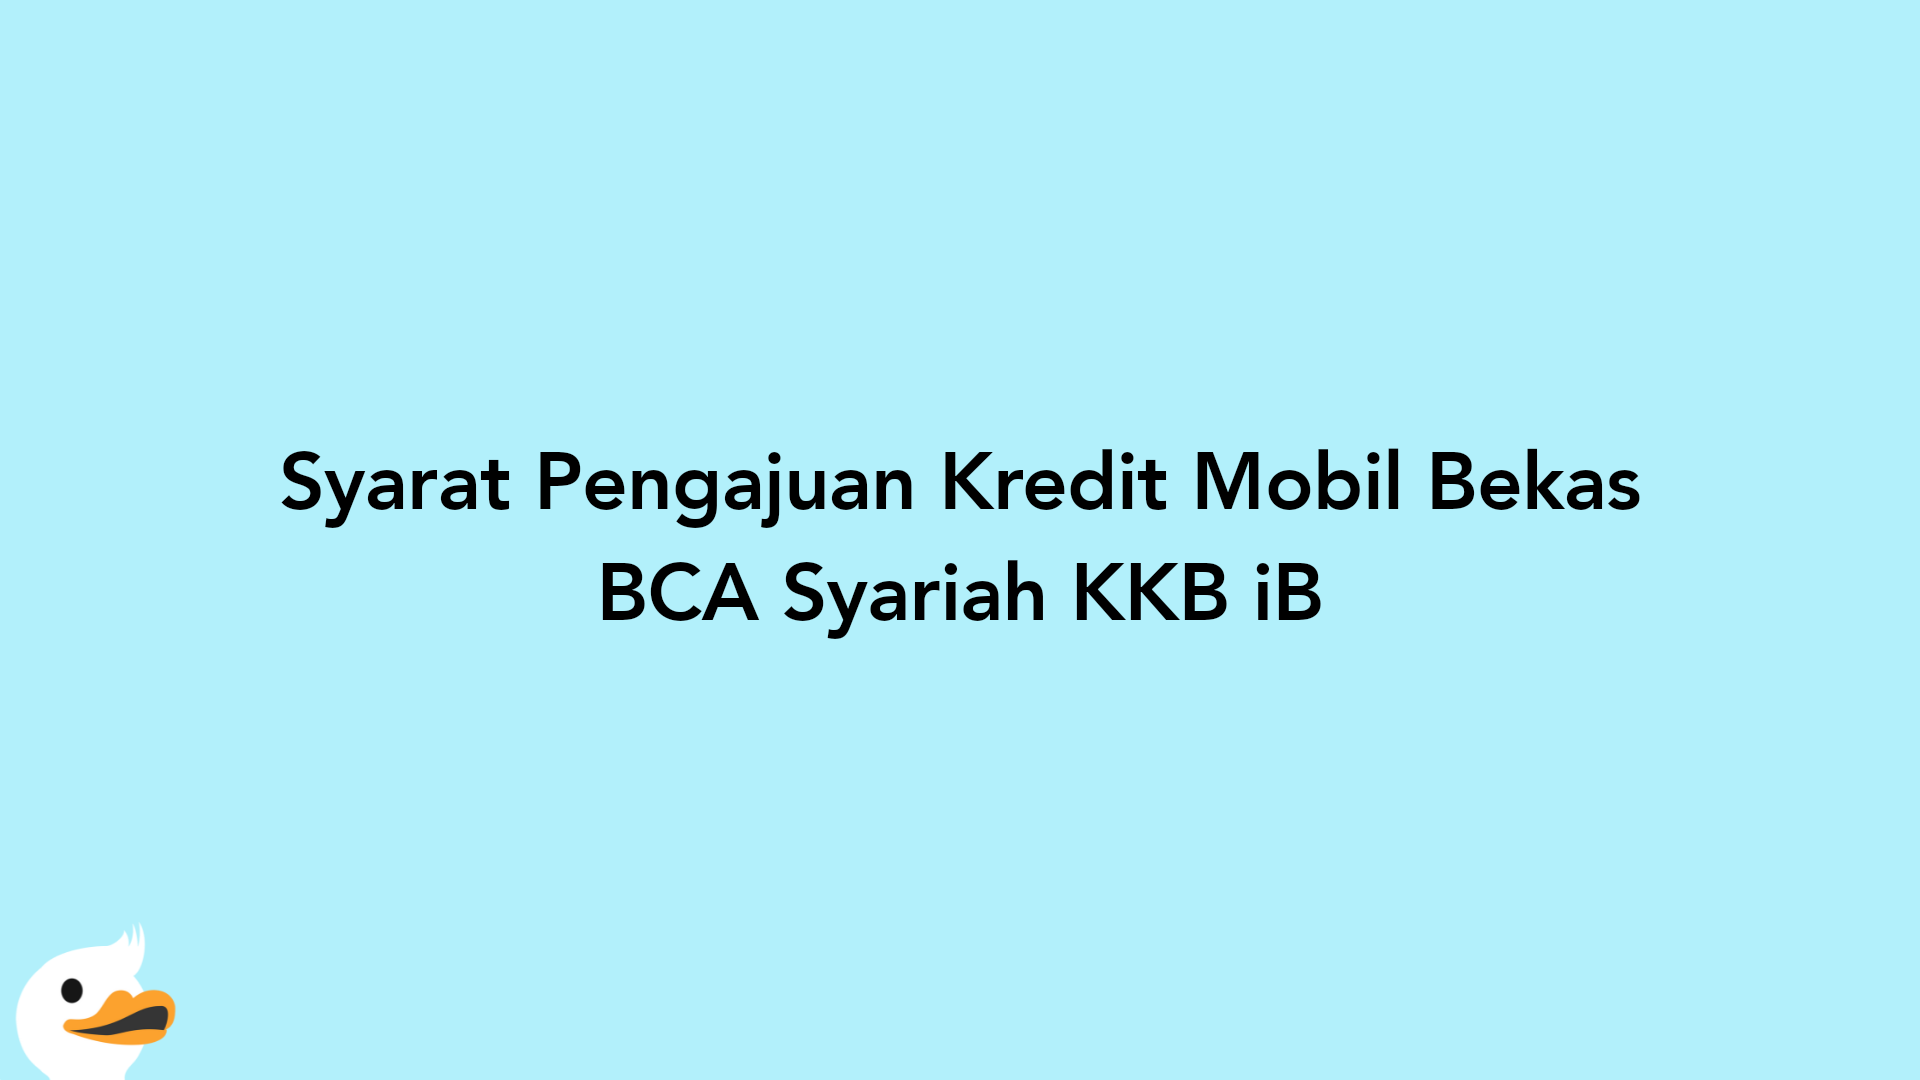 Syarat Pengajuan Kredit Mobil Bekas BCA Syariah KKB iB